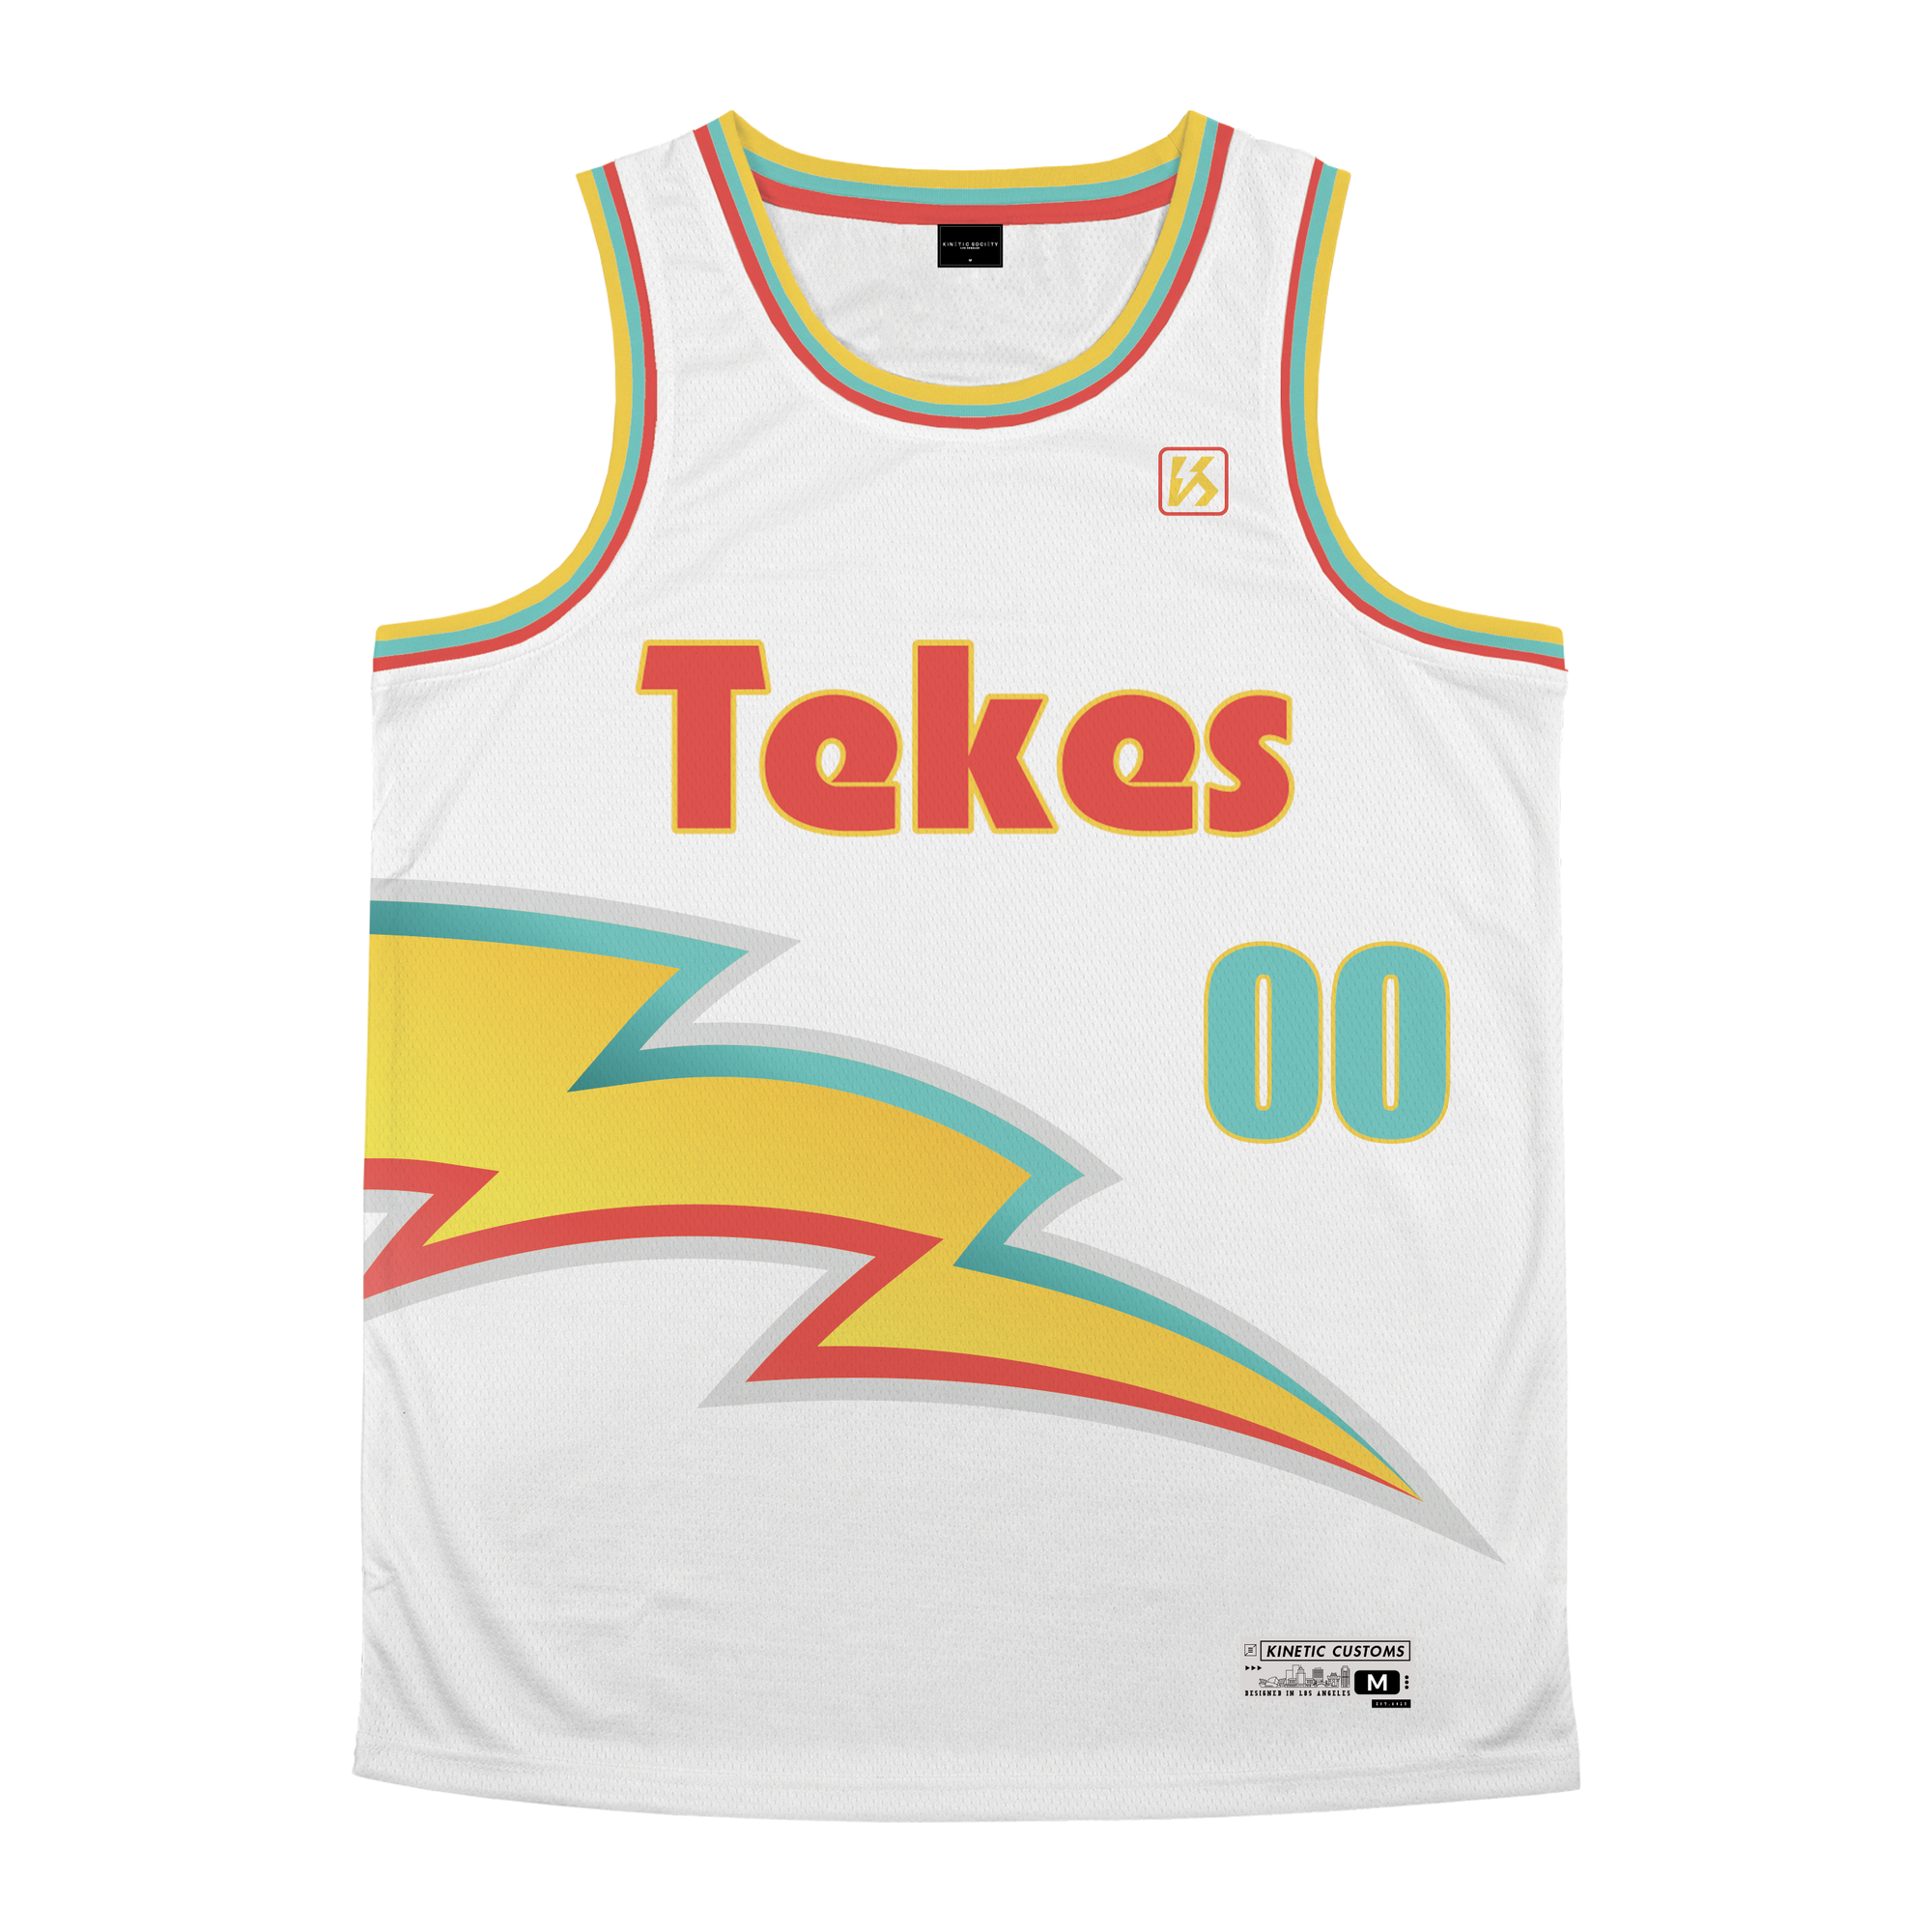 Tau Kappa Epsilon - Bolt Basketball Jersey